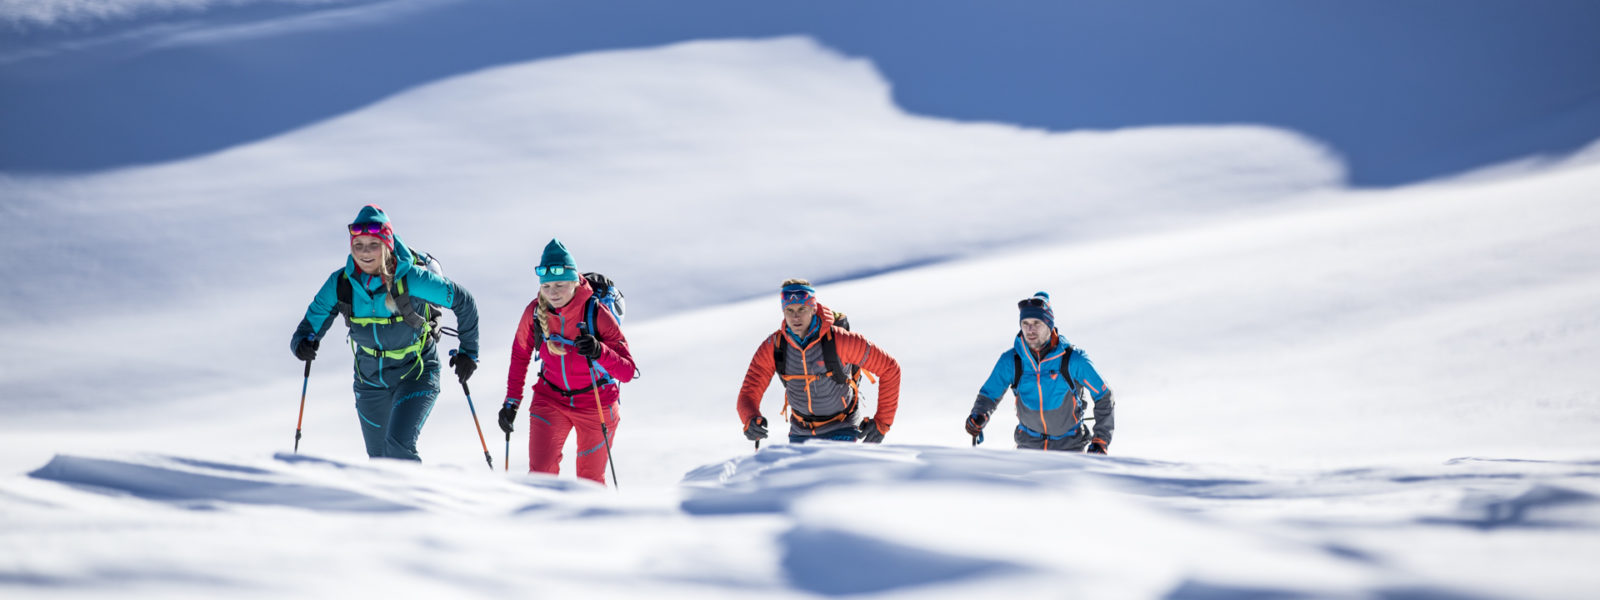 Dynafit Skitourenausrüstung Winter 2018/19